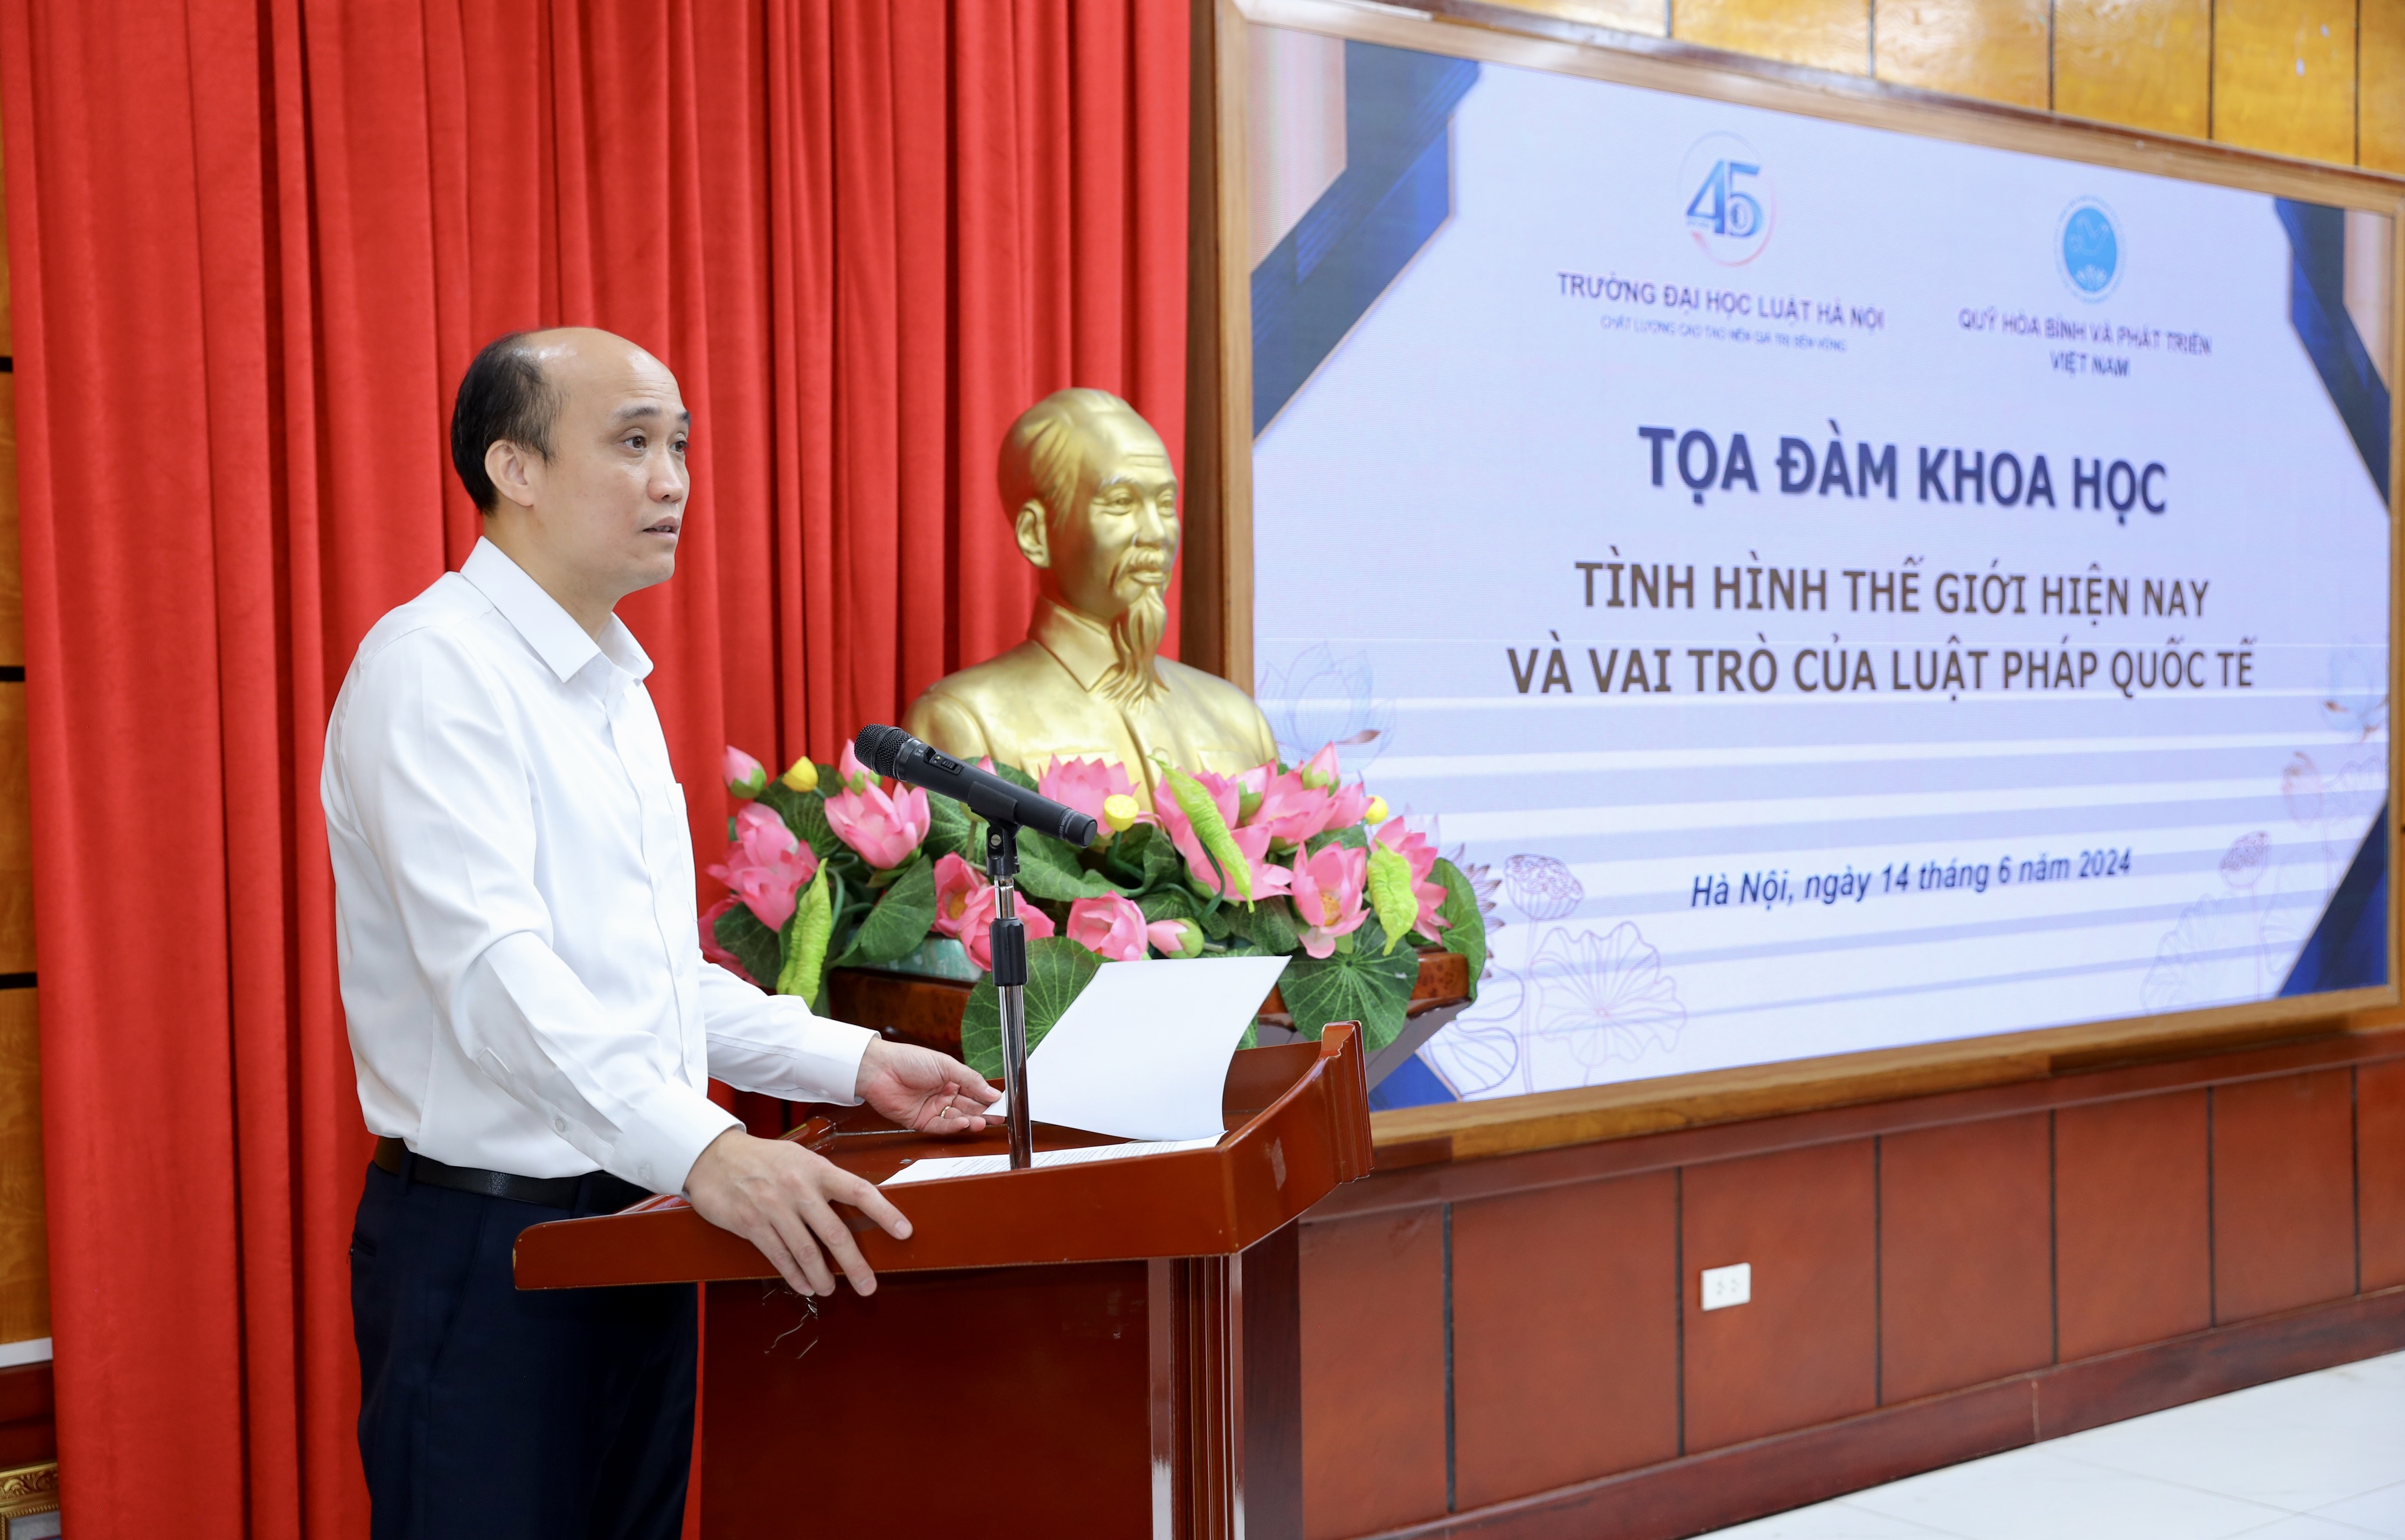 Vai trò của luật pháp quốc tế và nâng tầm vị thế Việt Nam trong xây dựng luật quốc tế